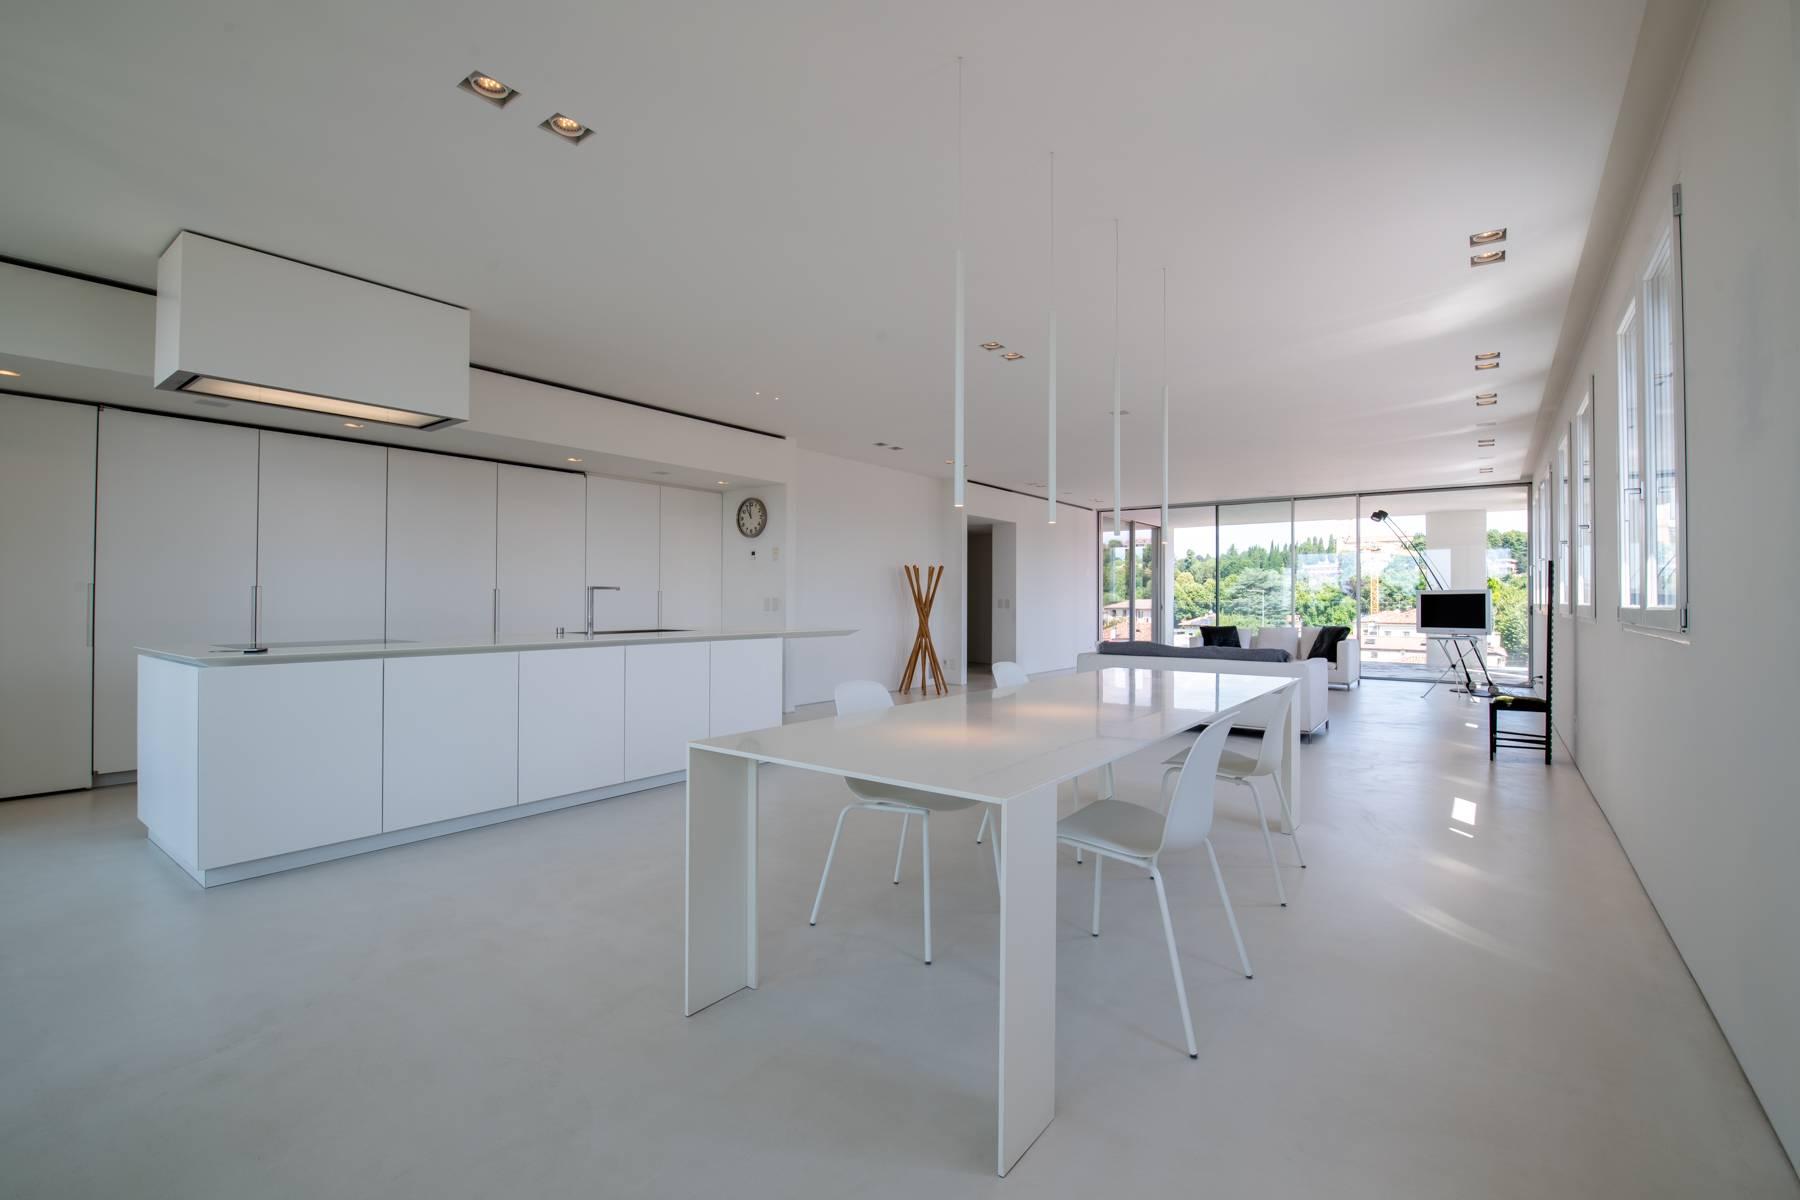 Penthouse élégant panoramique et à haute efficacité énergétique avec un design moderne raffiné - 1